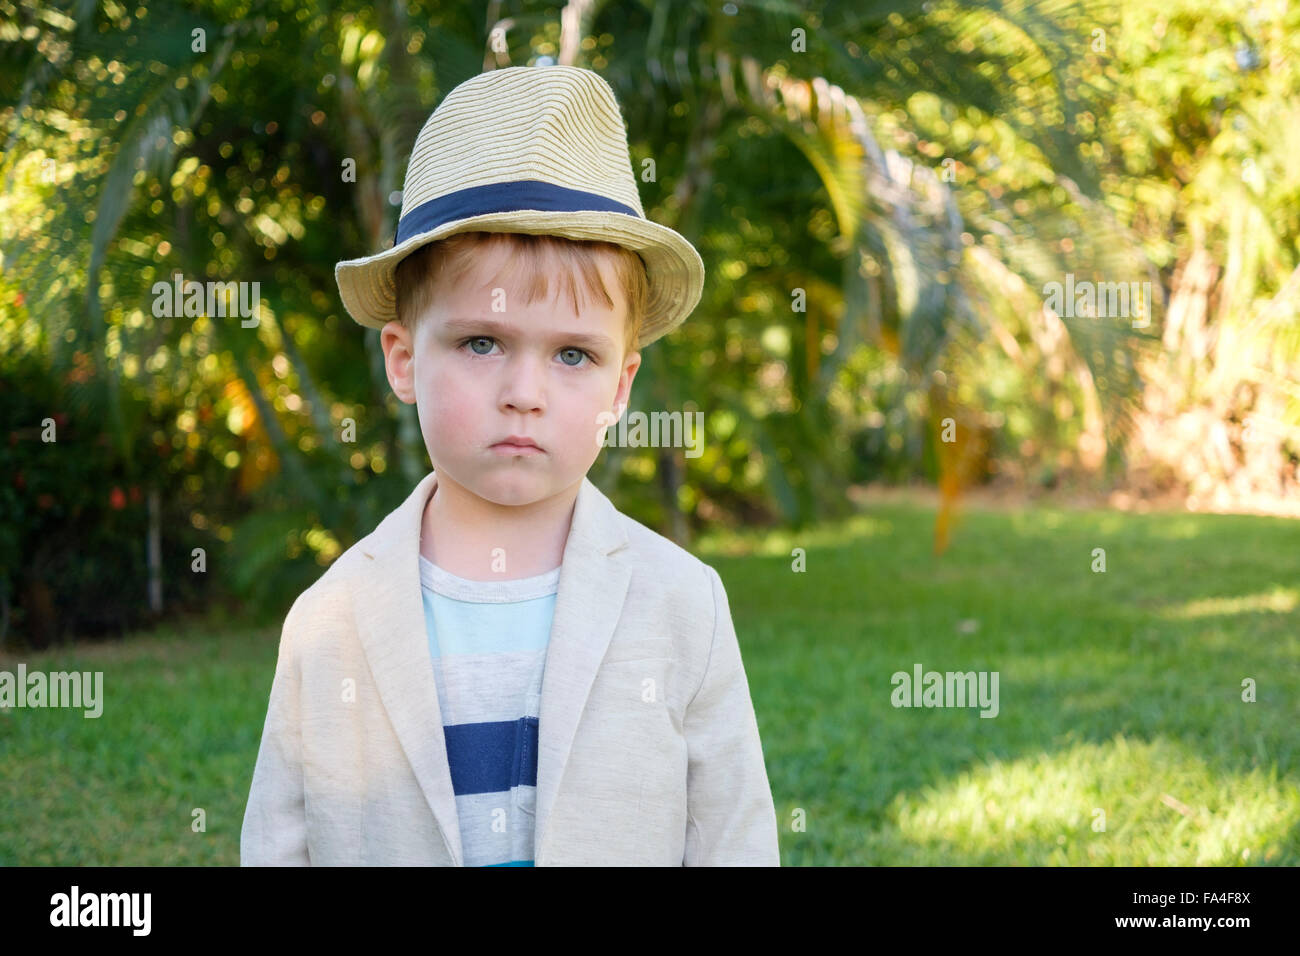 Portrait de l'enfant en tenue de ville - arrière allumé portrait de bébé garçon avec veste de costume et chapeau à l'environnement tropical Banque D'Images